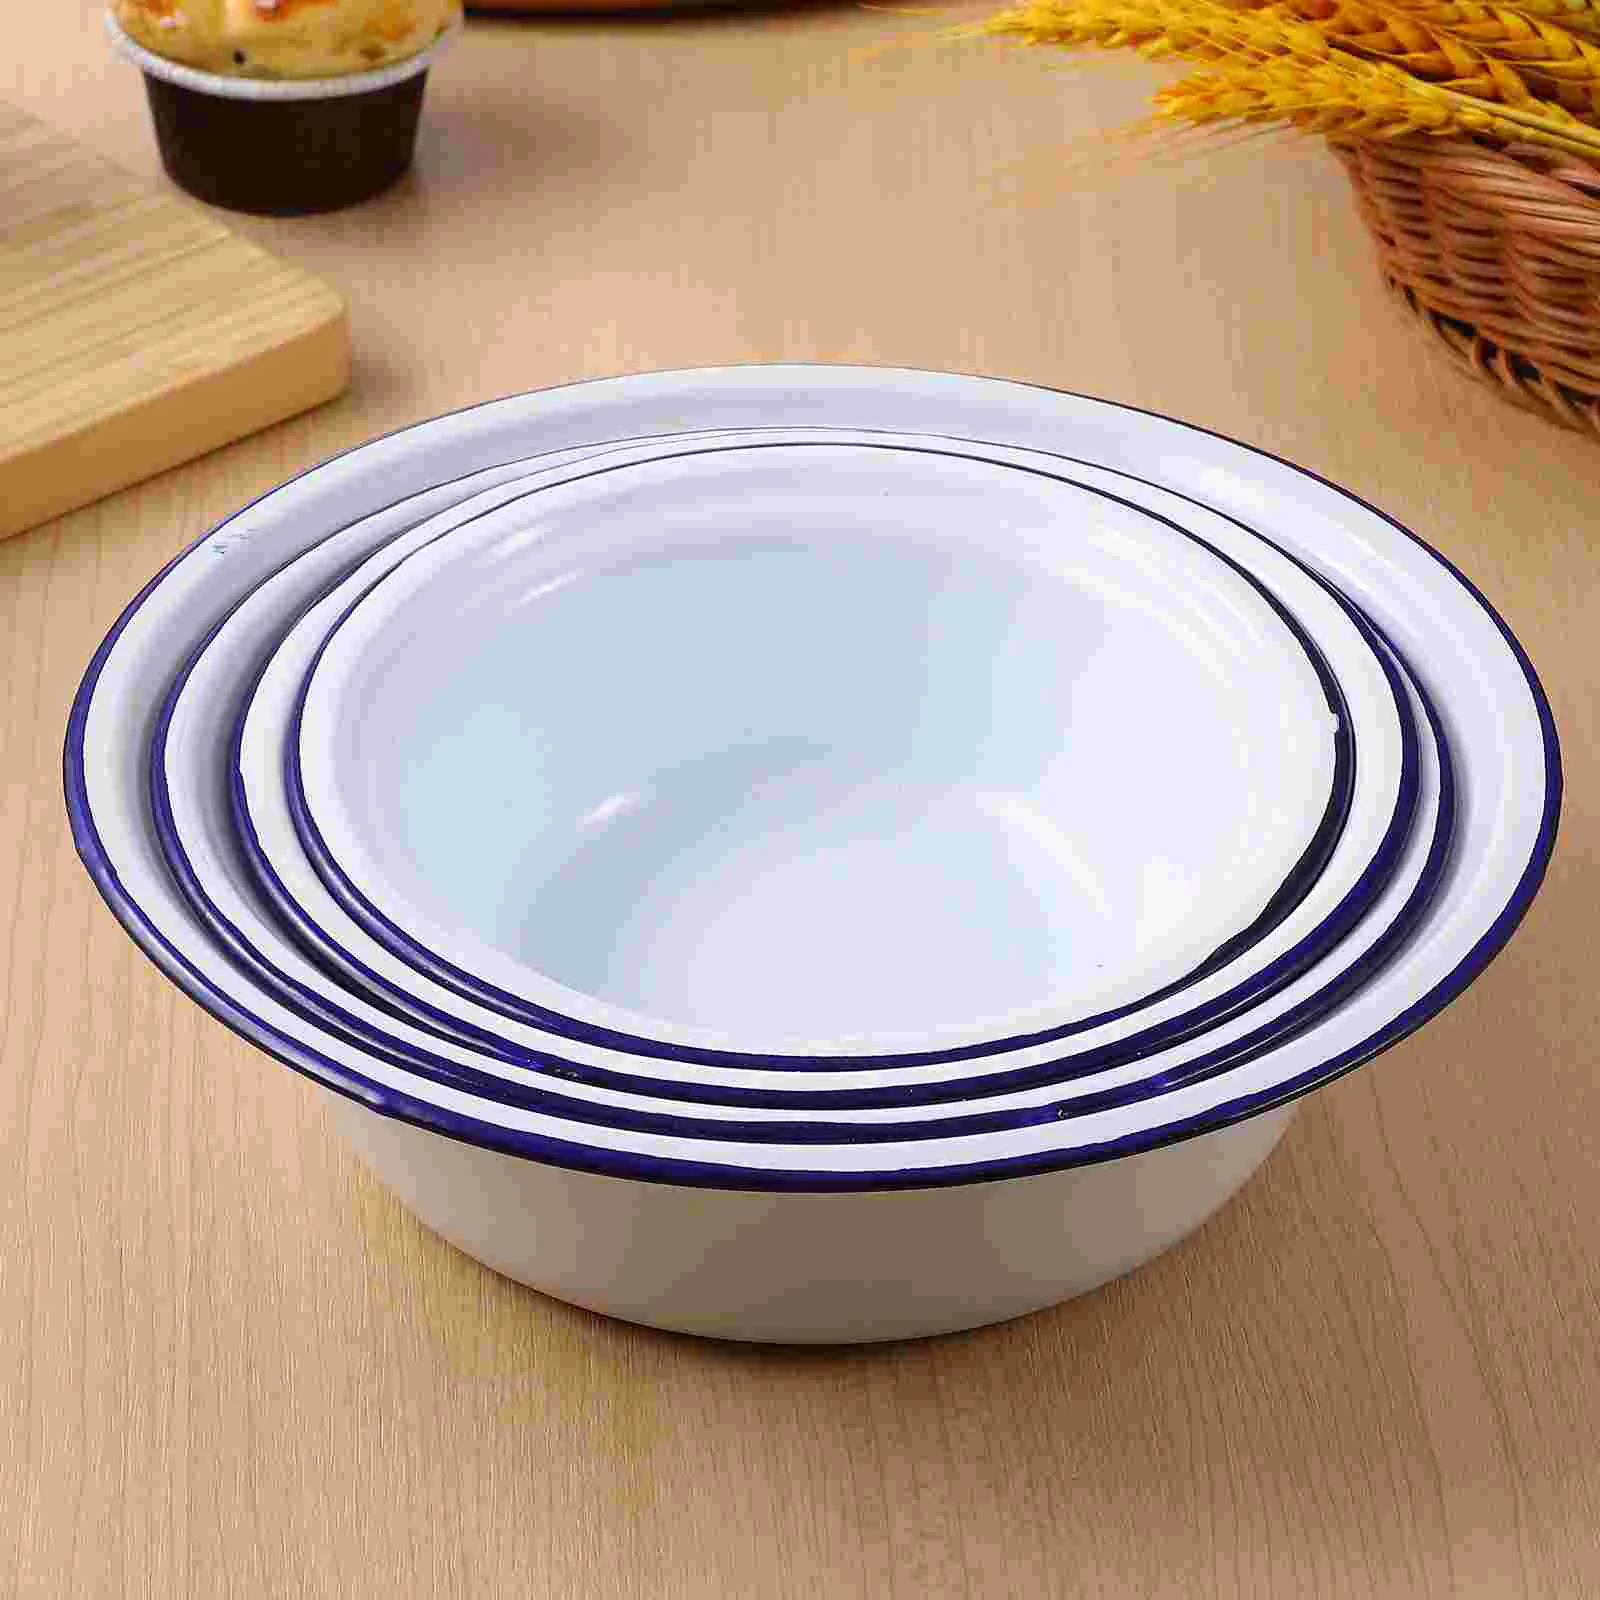 

4 Pcs Enamel Bowls Reusable Serving Bowls Retro Enamelware for Rice Noodle Soup Snack Salad Fruit Kitchen products